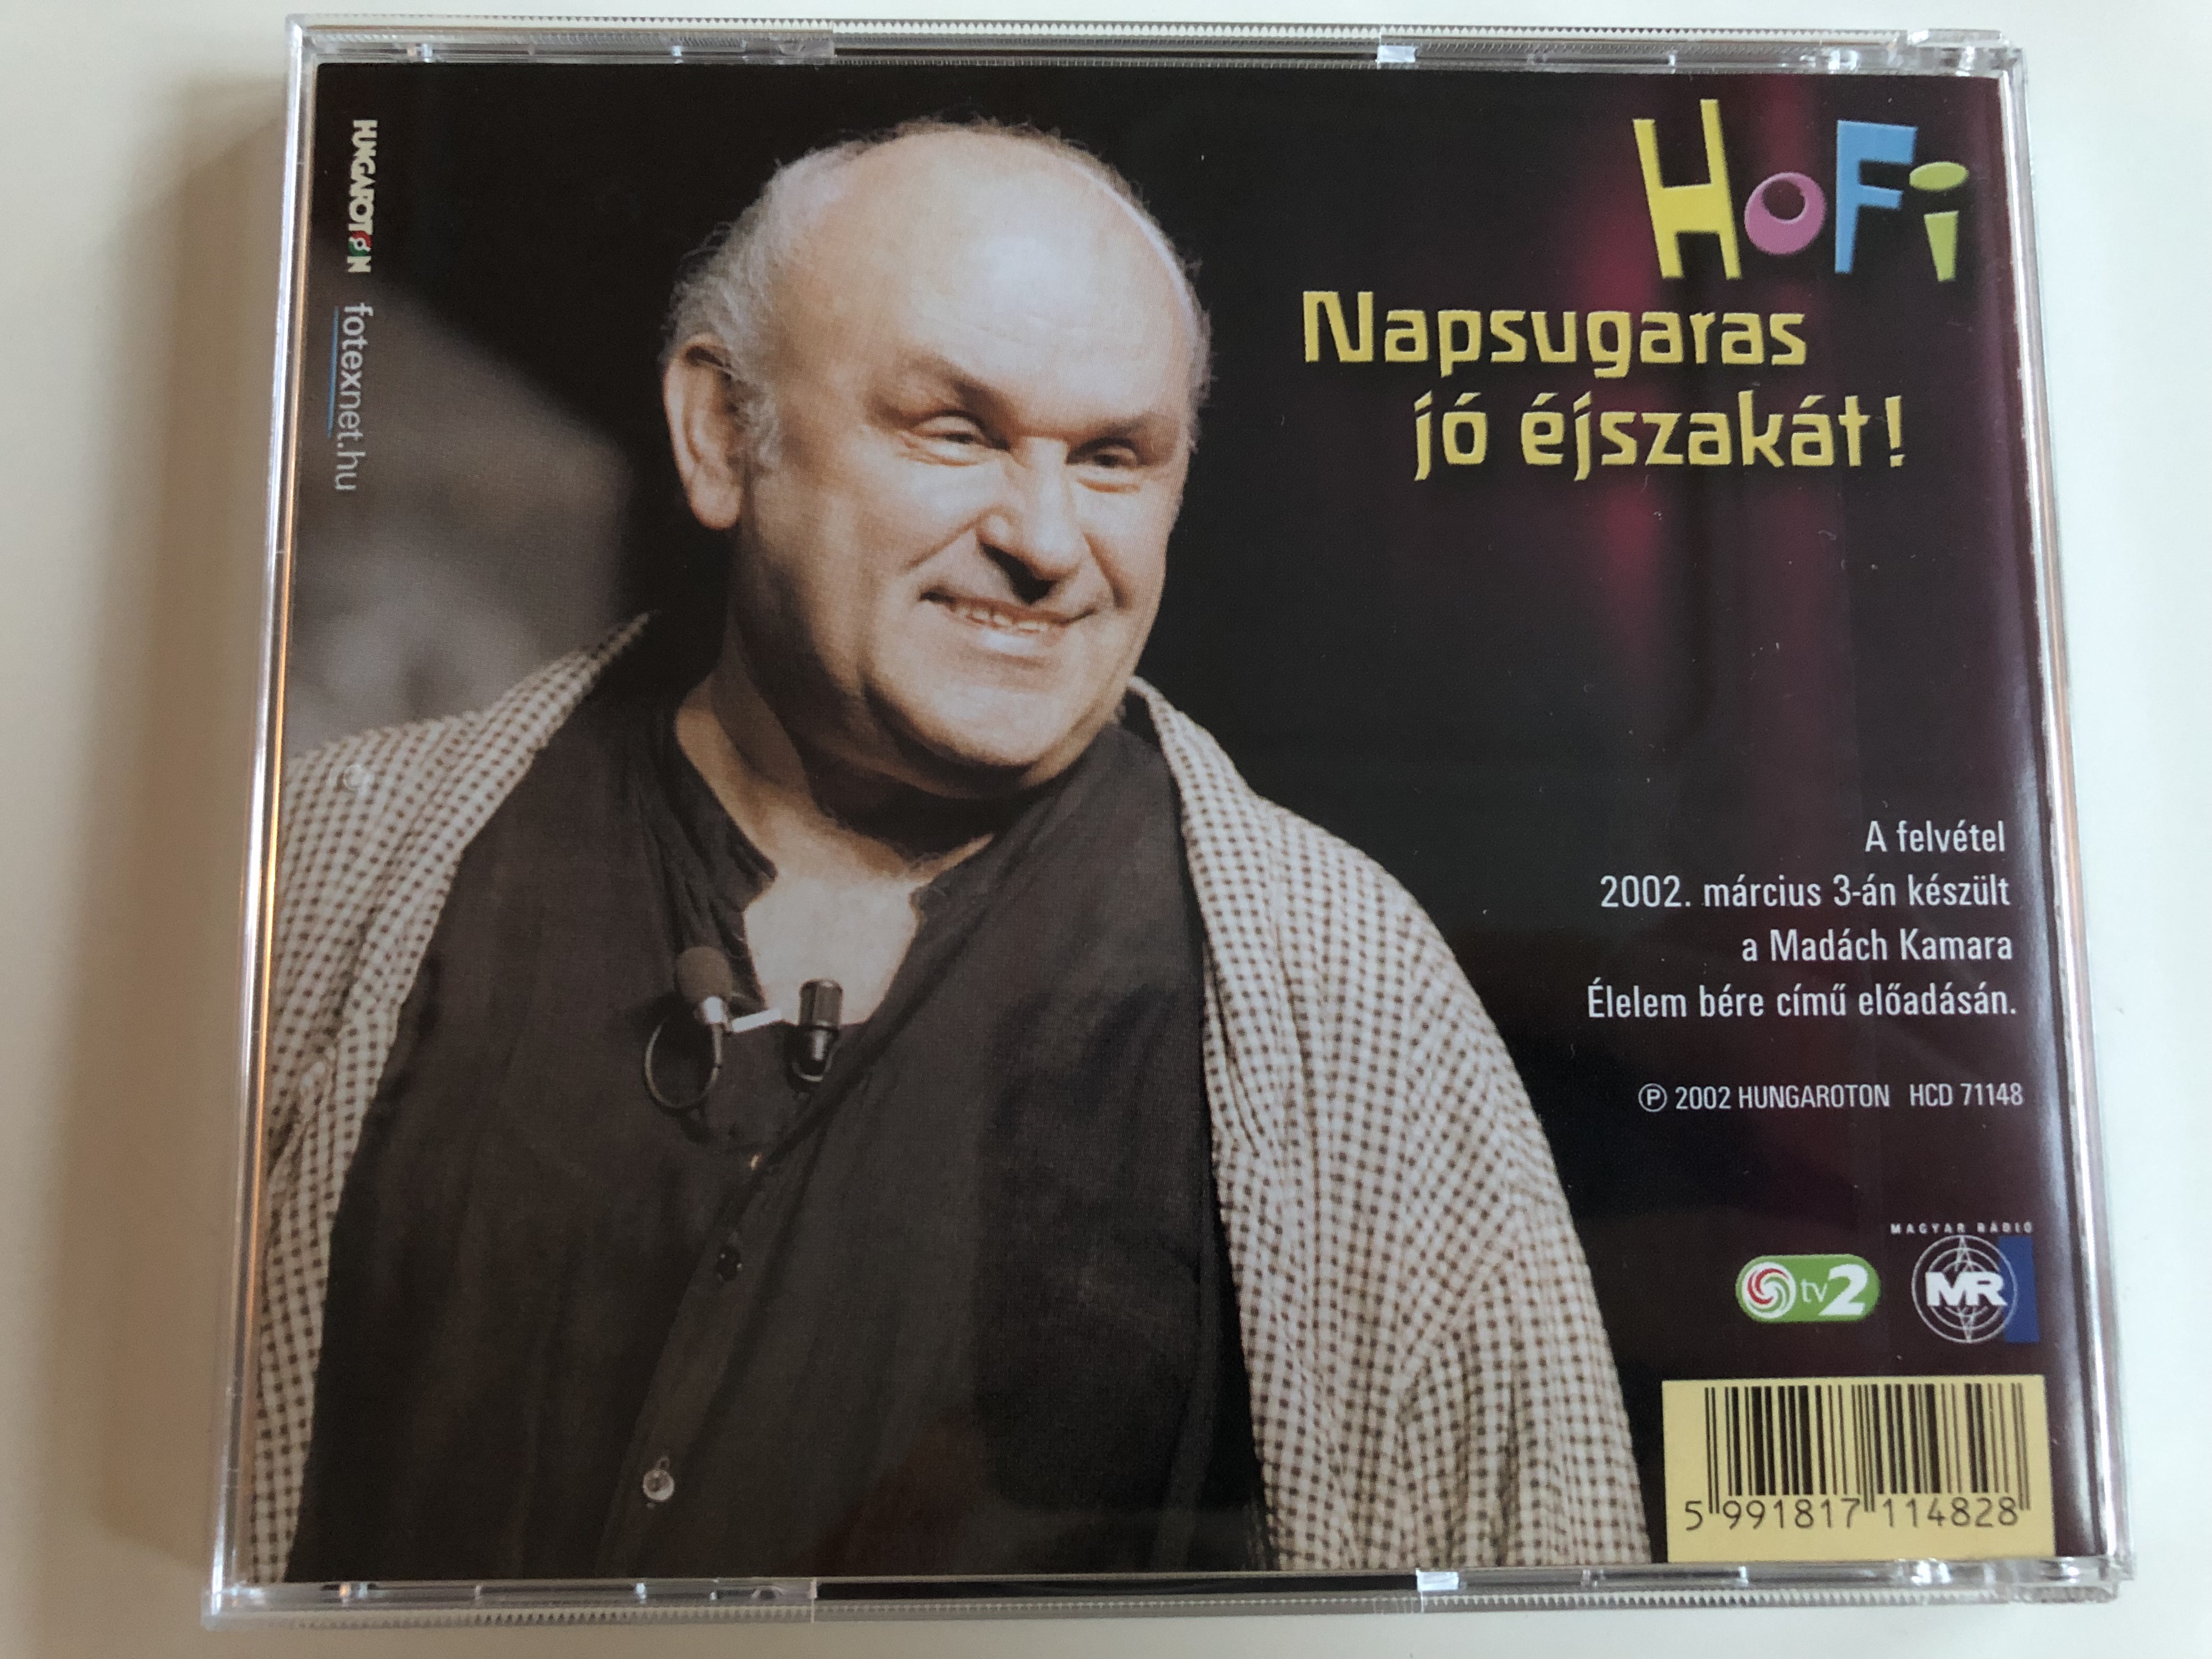 hofi-napsugaras-j-jszak-t-audio-cd-2002-hungaroton-hcd-71148-hungarian-stand-up-comedian-hofi-last-recording-8-.jpg